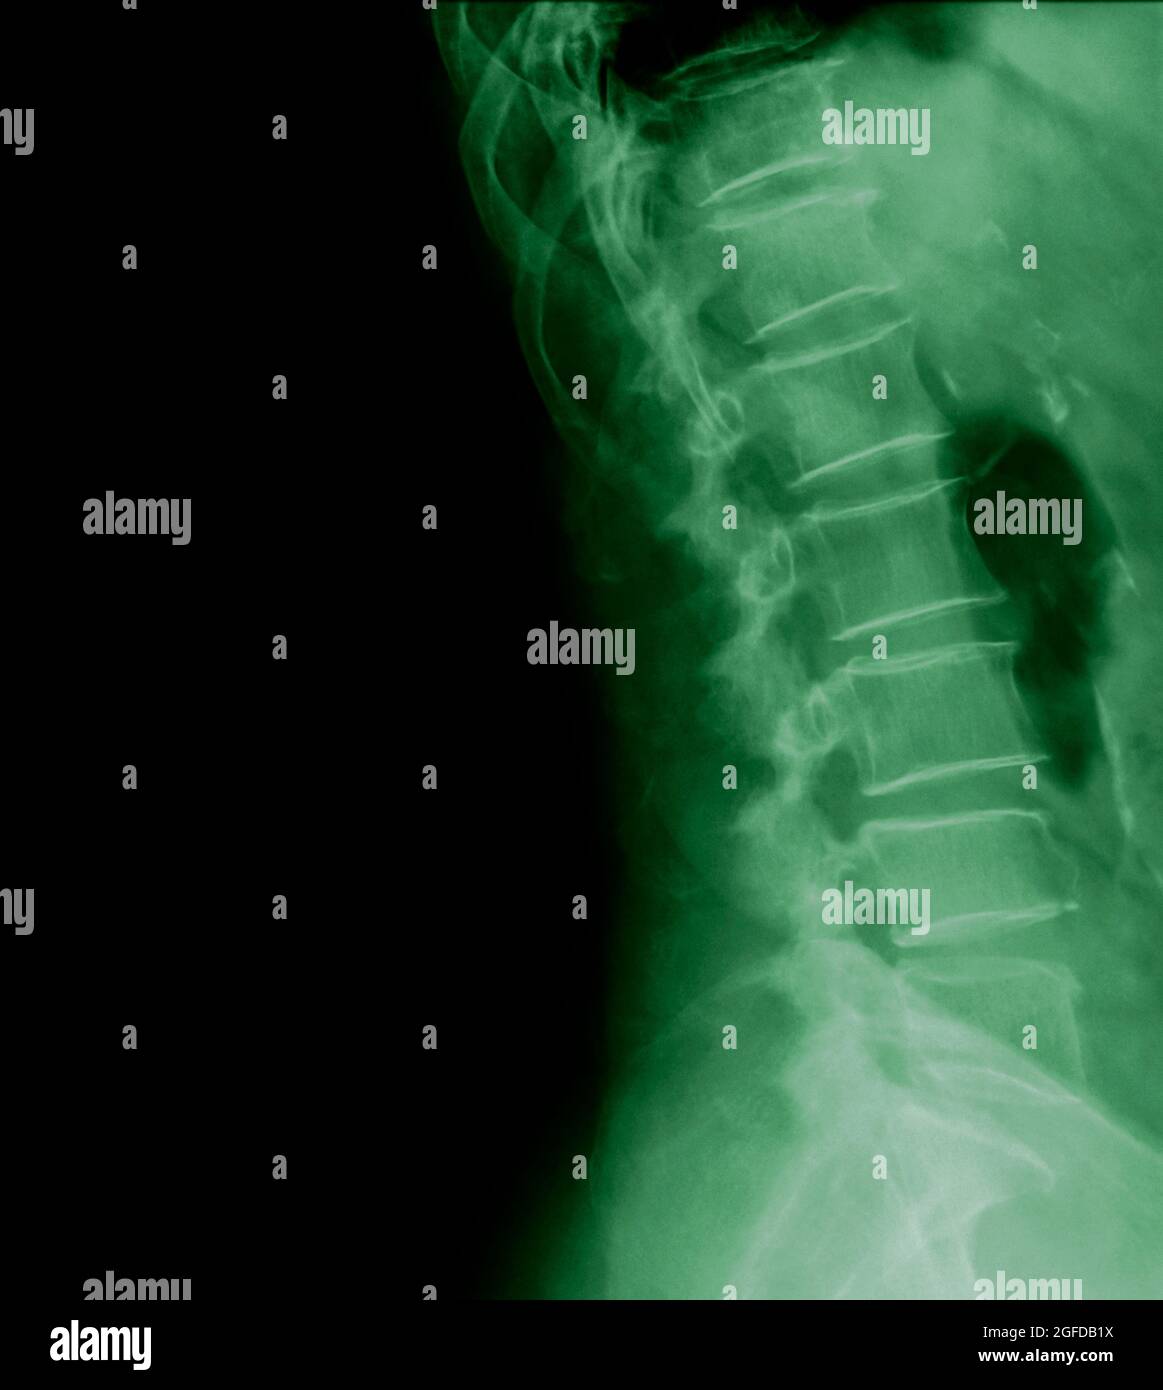 Vista laterale radiologica della colonna lombare umana paziente di 77 anni Foto Stock